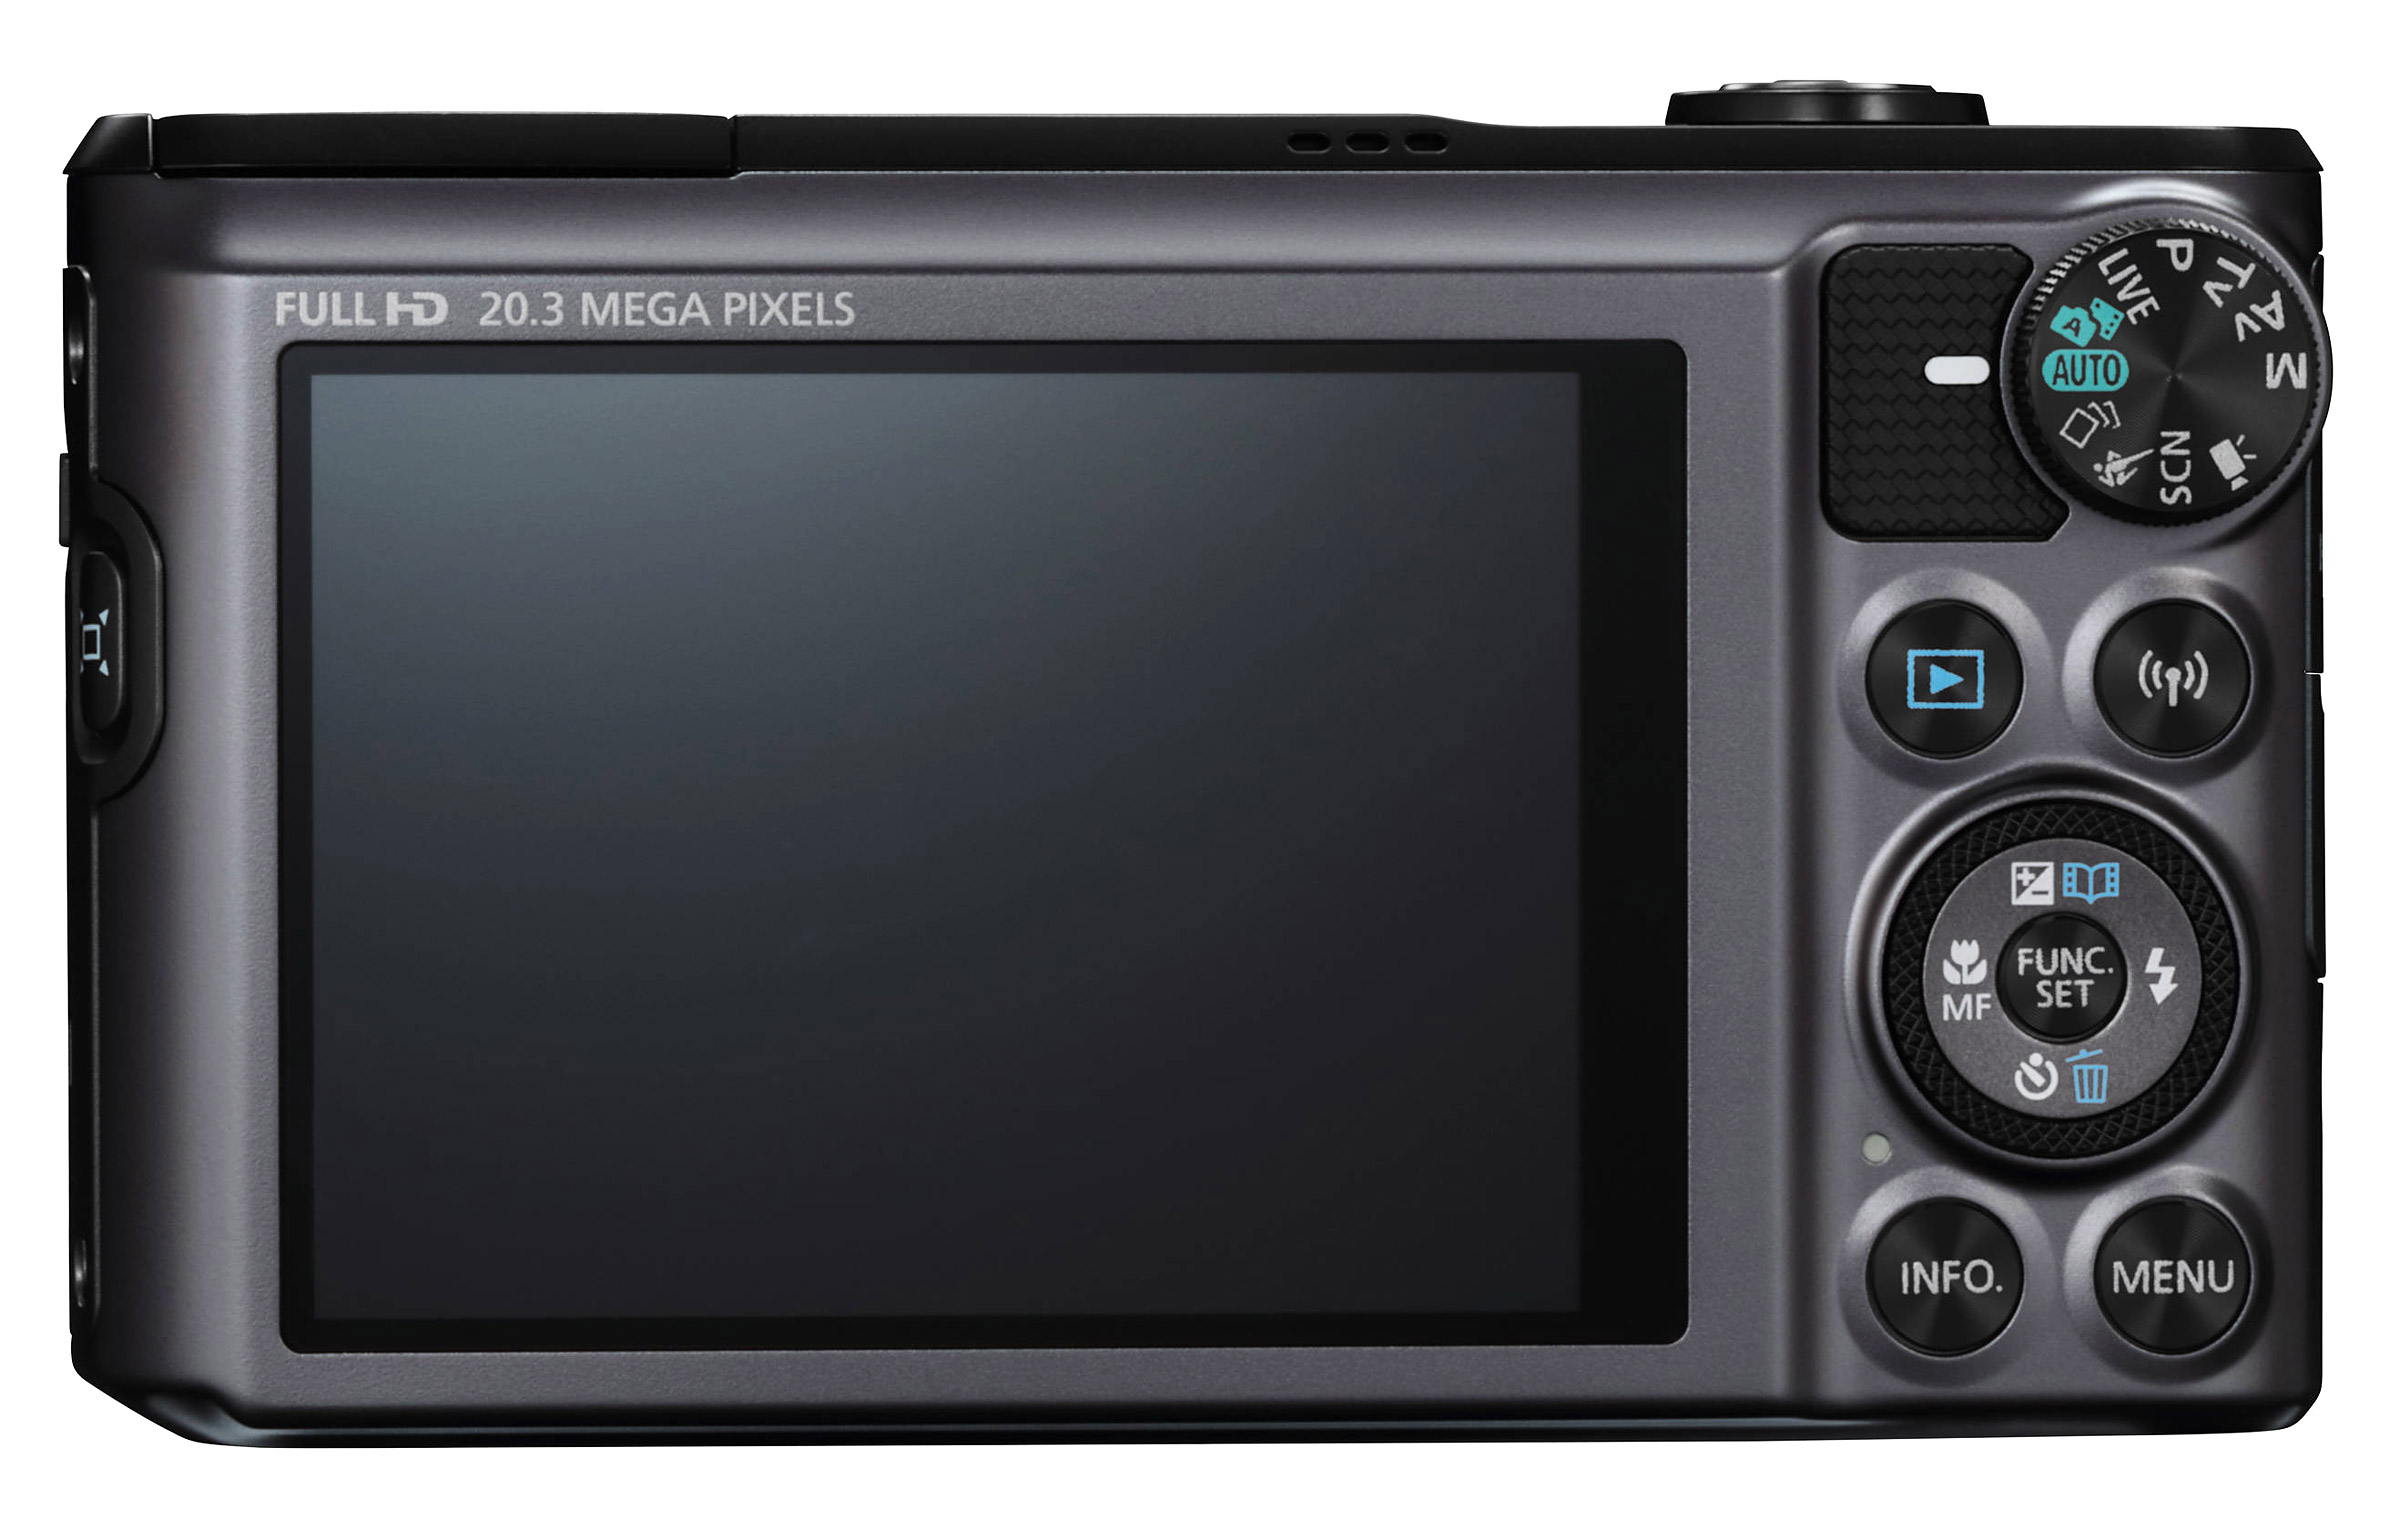 Canon PowerShot SX720 HS : Caratteristiche e Opinioni | JuzaPhoto